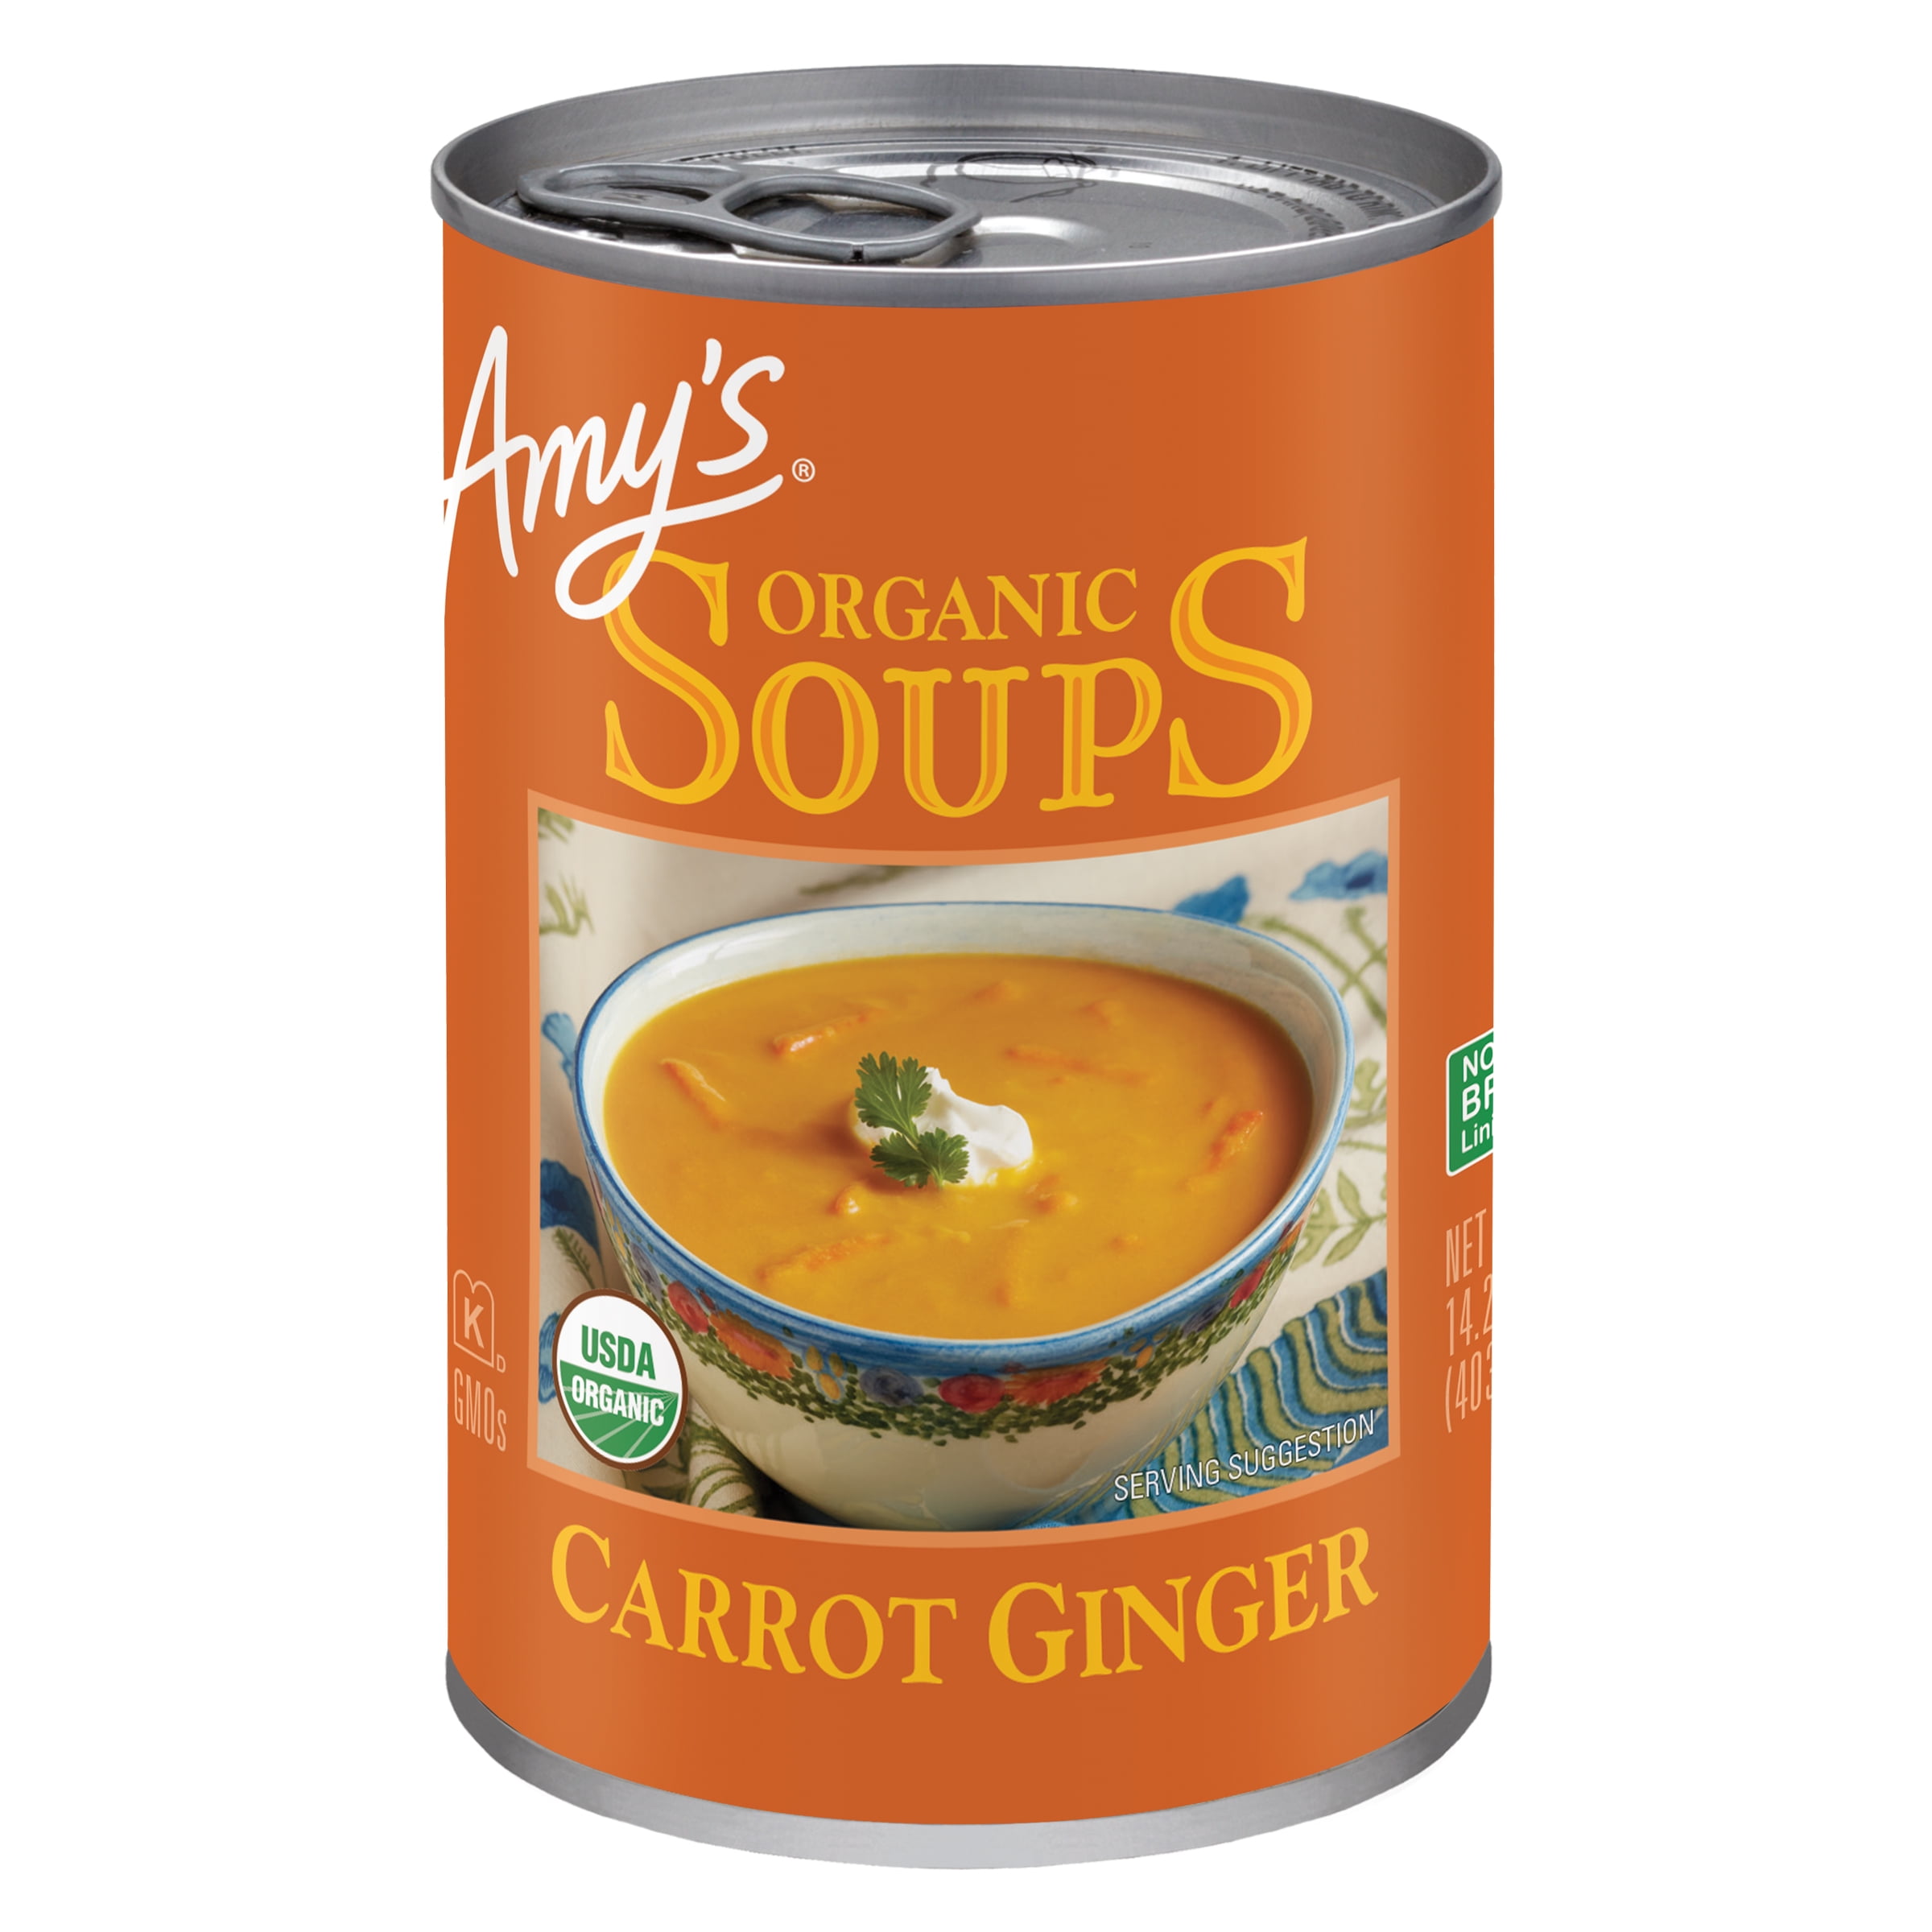 Carrot Ginger Soup - I Heart Vegetables